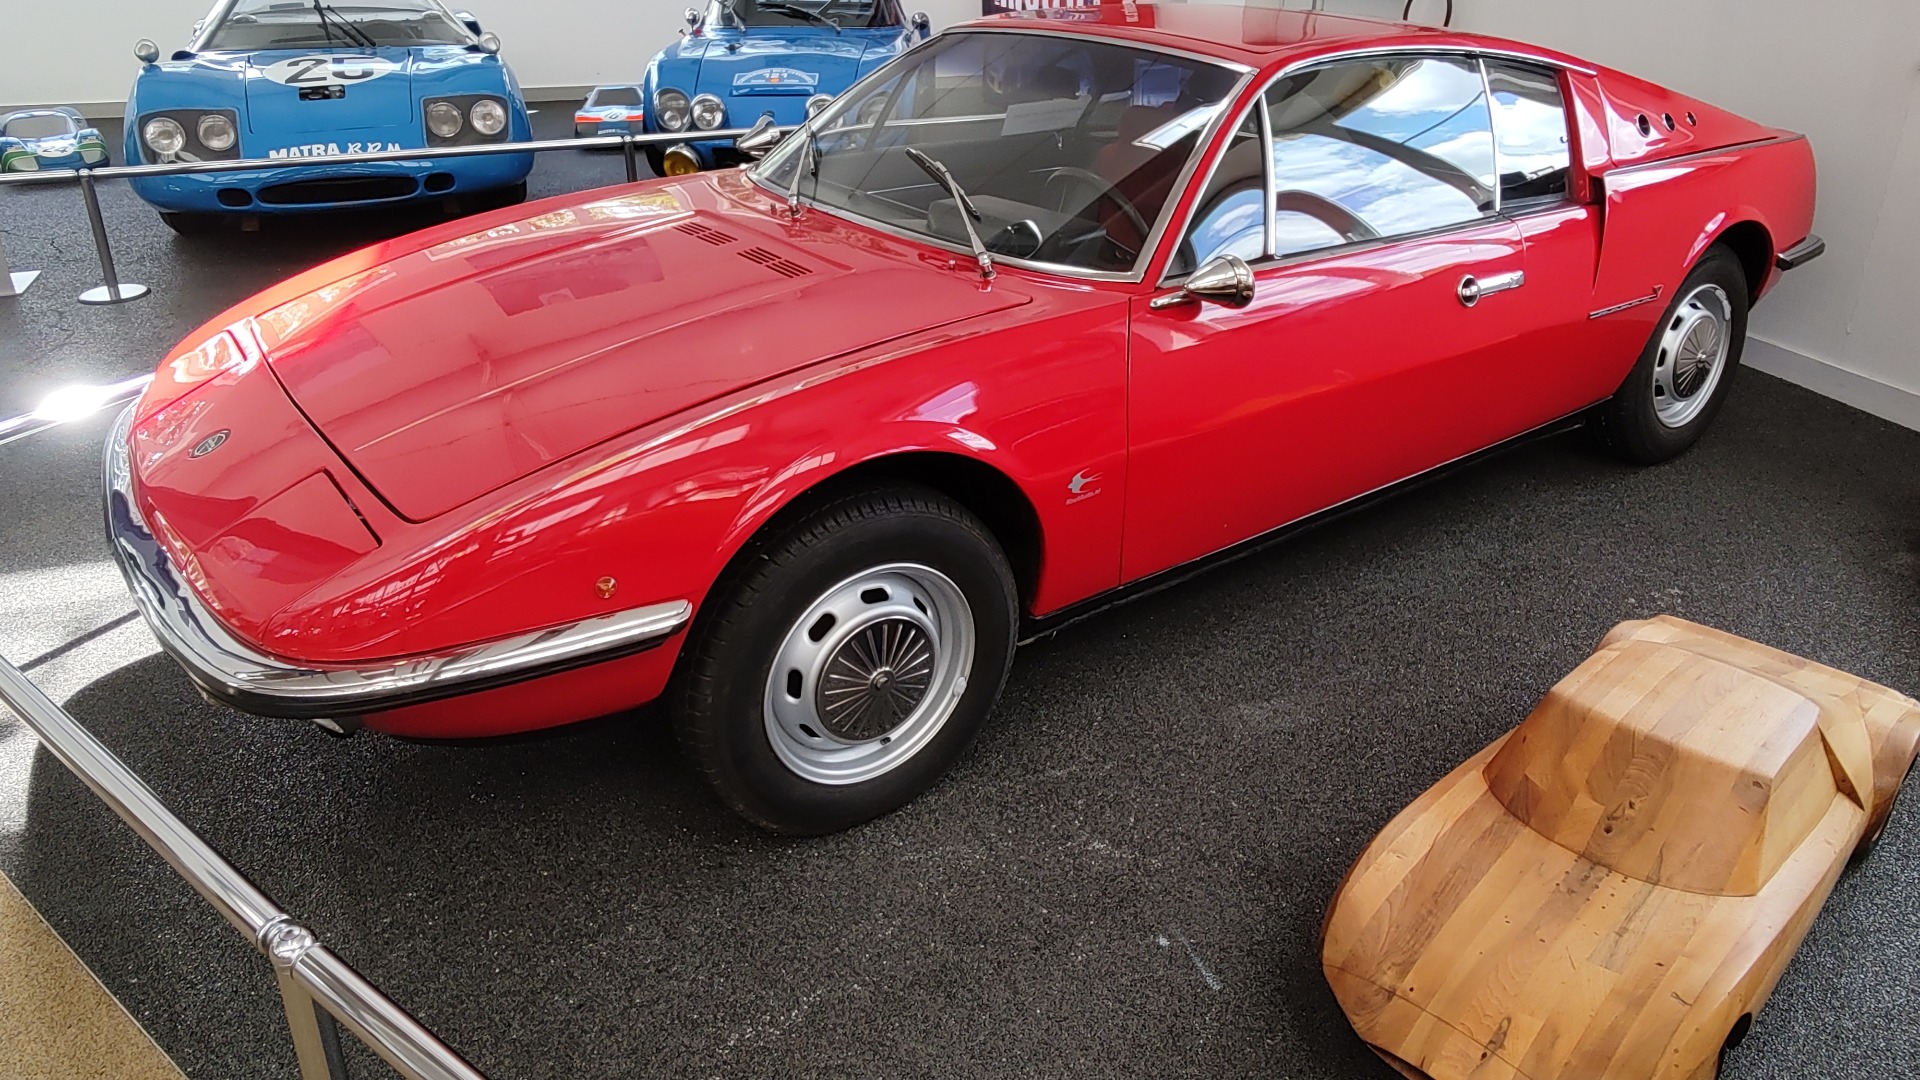 Vignale lagde i 1968 dette karosseriet til en Matra 530, som unektelig har en viss Maserati-stil over seg.